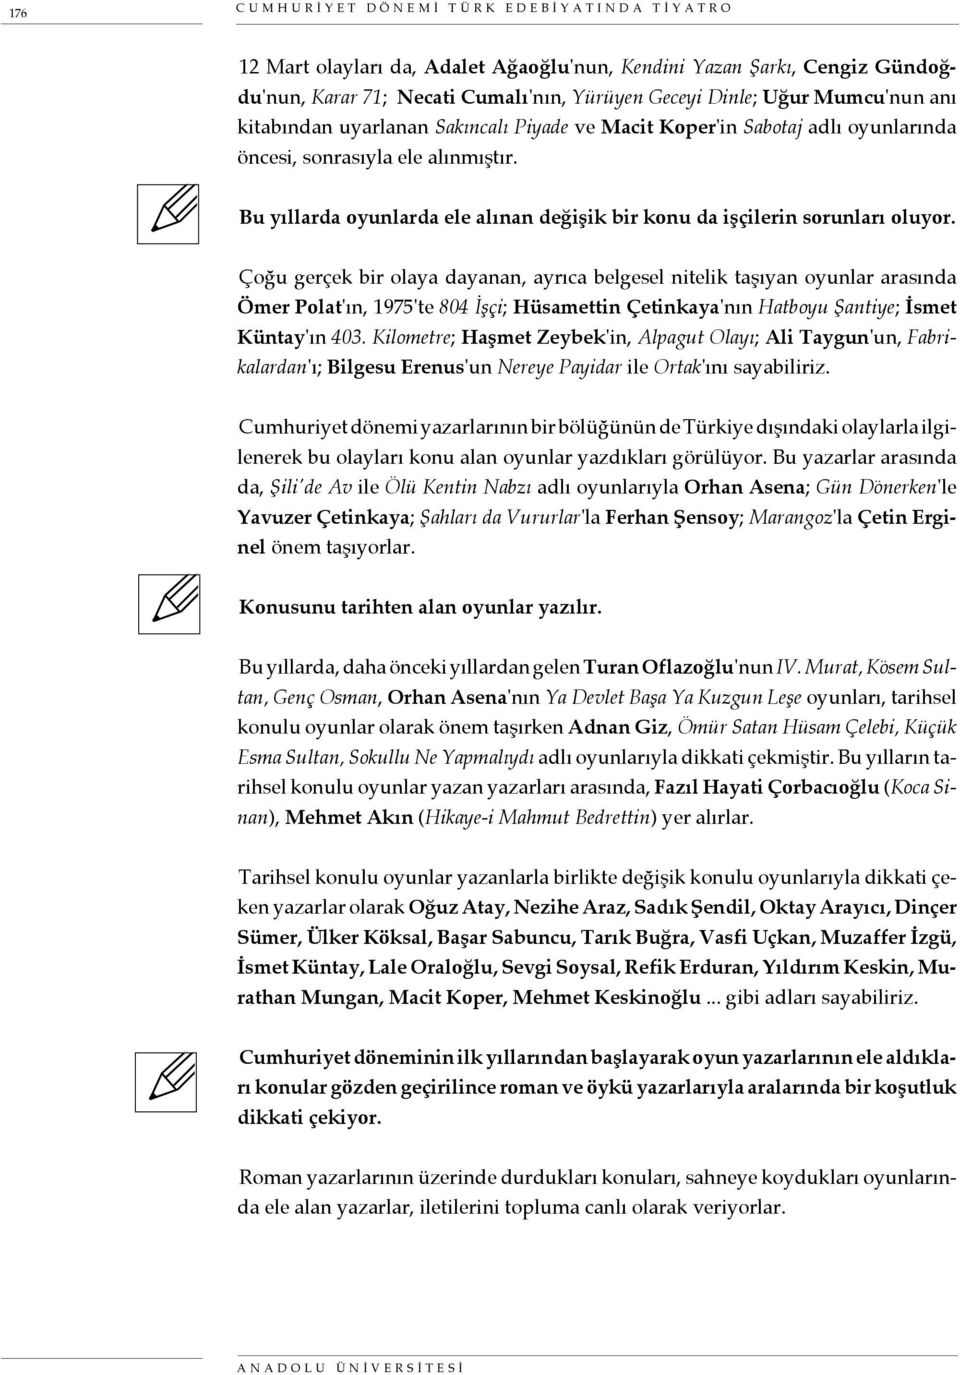 cumhuriyet donemi turk edebiyatinda tiyatro pdf ucretsiz indirin